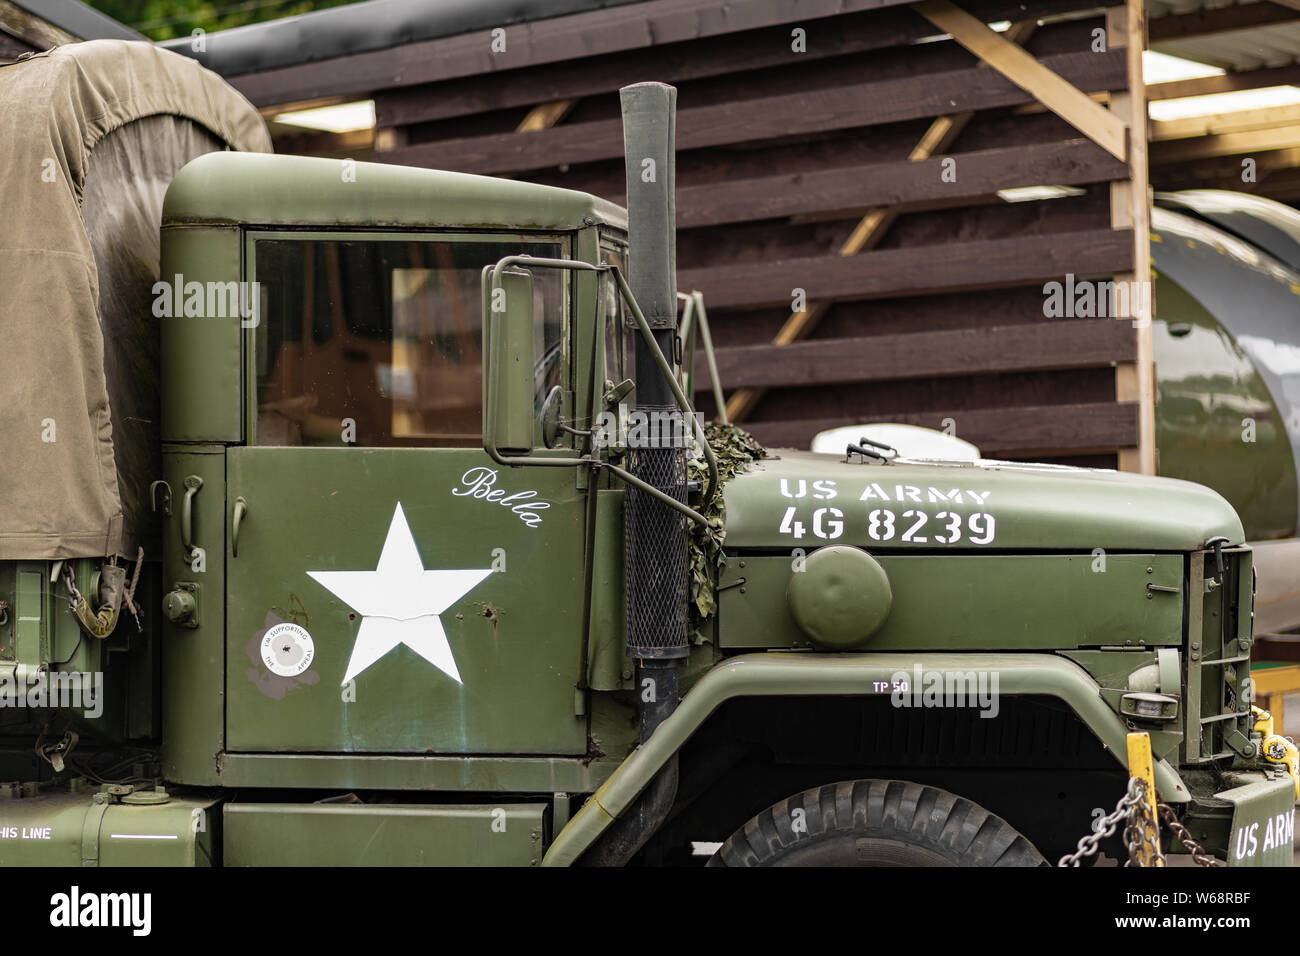 DONCASTER, Royaume-Uni - 28 MAI 2019 juillet : un gros plan d'un livre vert et marron M35 camion de l'armée utilisés pendant la seconde guerre mondiale 2 Banque D'Images